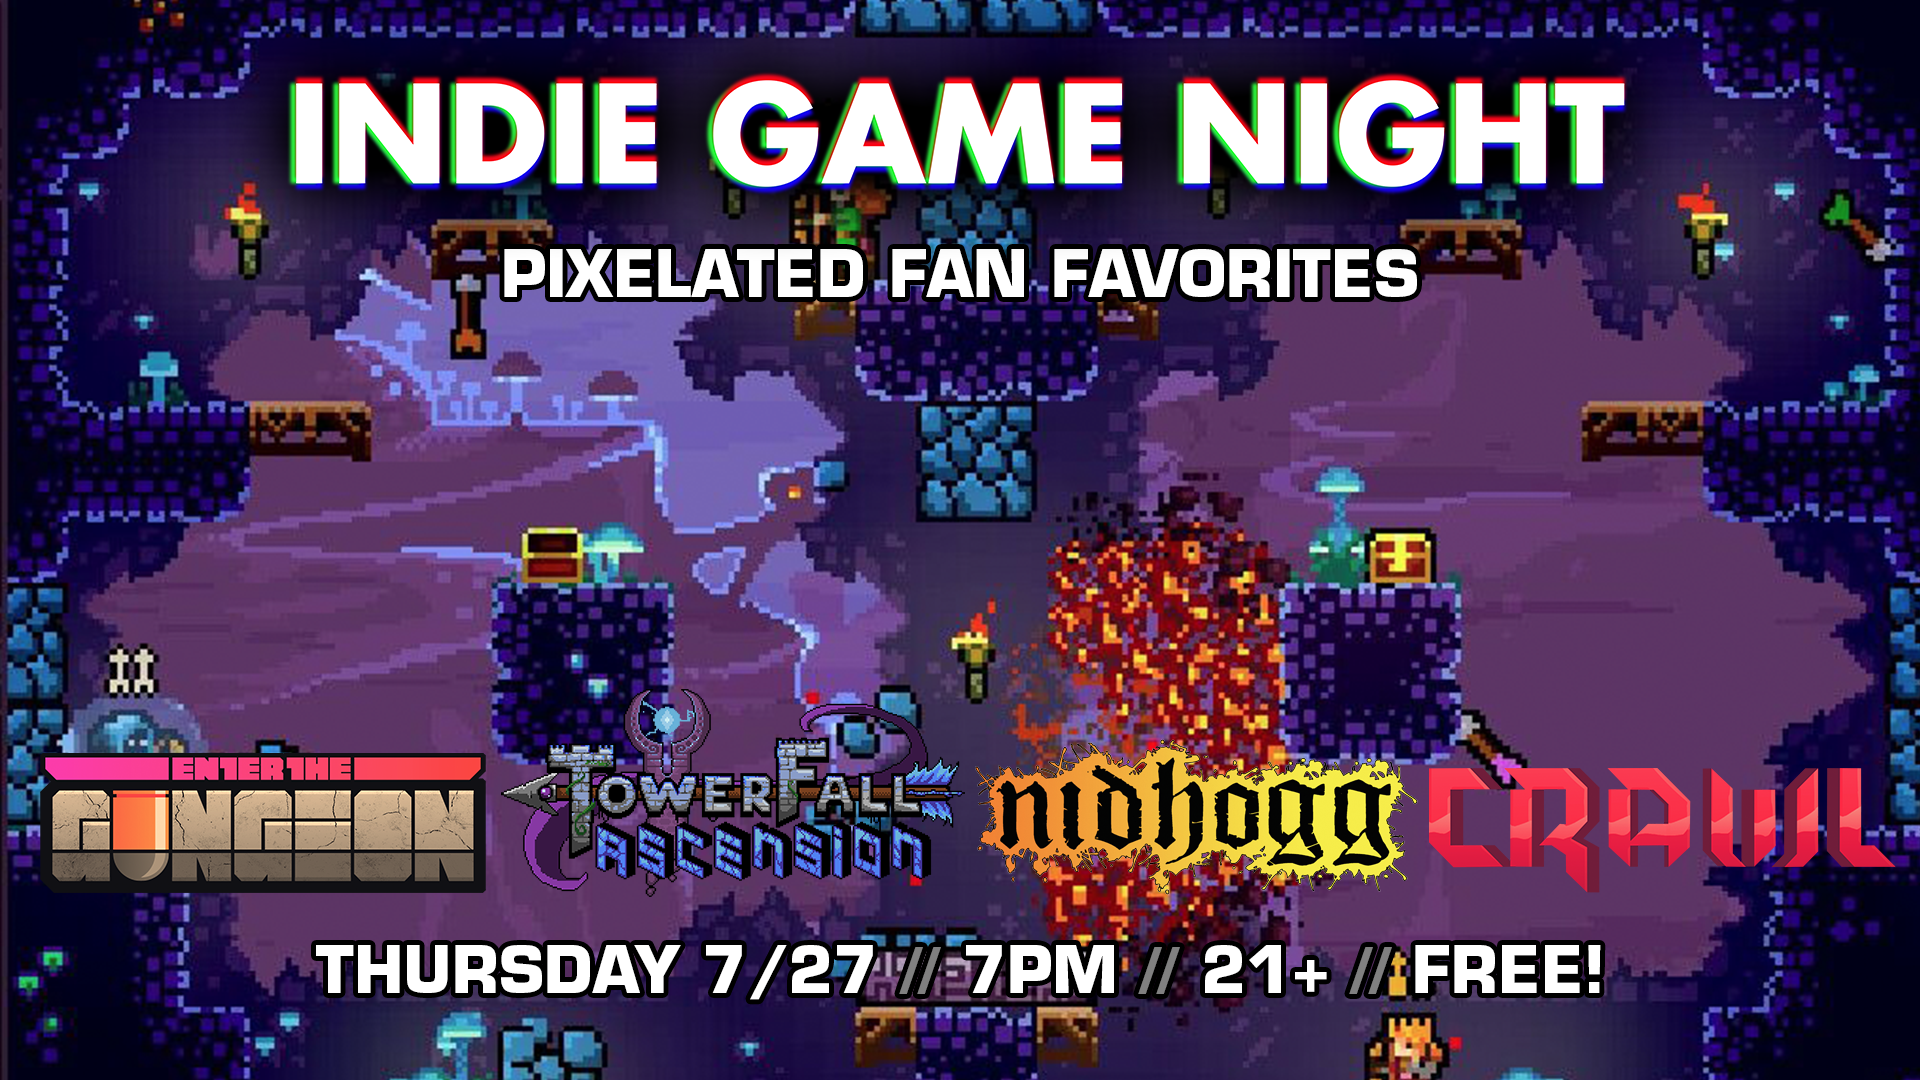 Indie Game Night 07-27-17